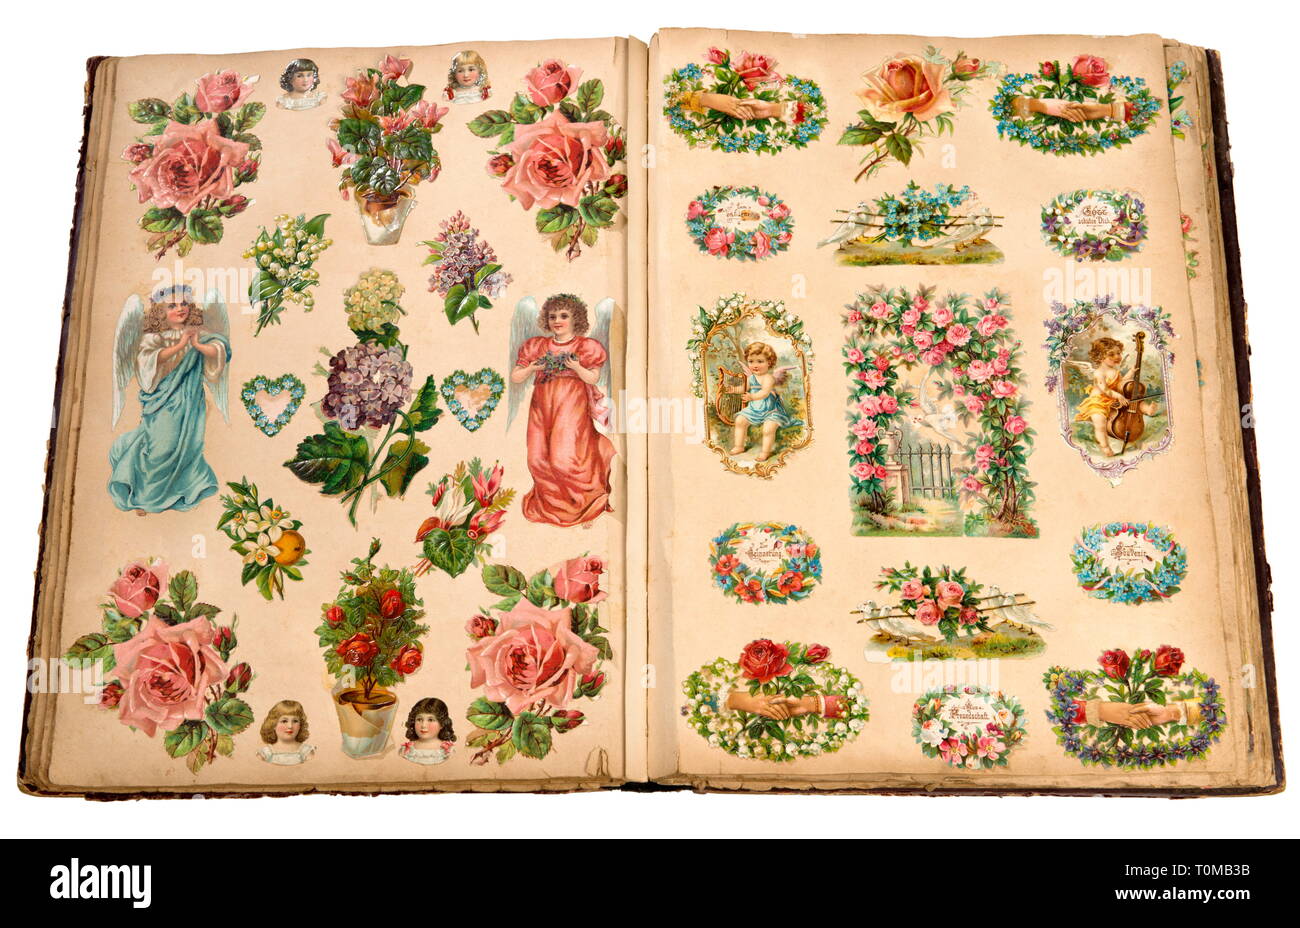 Kitsch/Karten/Souvenir, album von Versen, öffnen Sie die Seite, Lithographie, Deutschland, ca. 1893, Additional-Rights - Clearance-Info - Not-Available Stockfoto